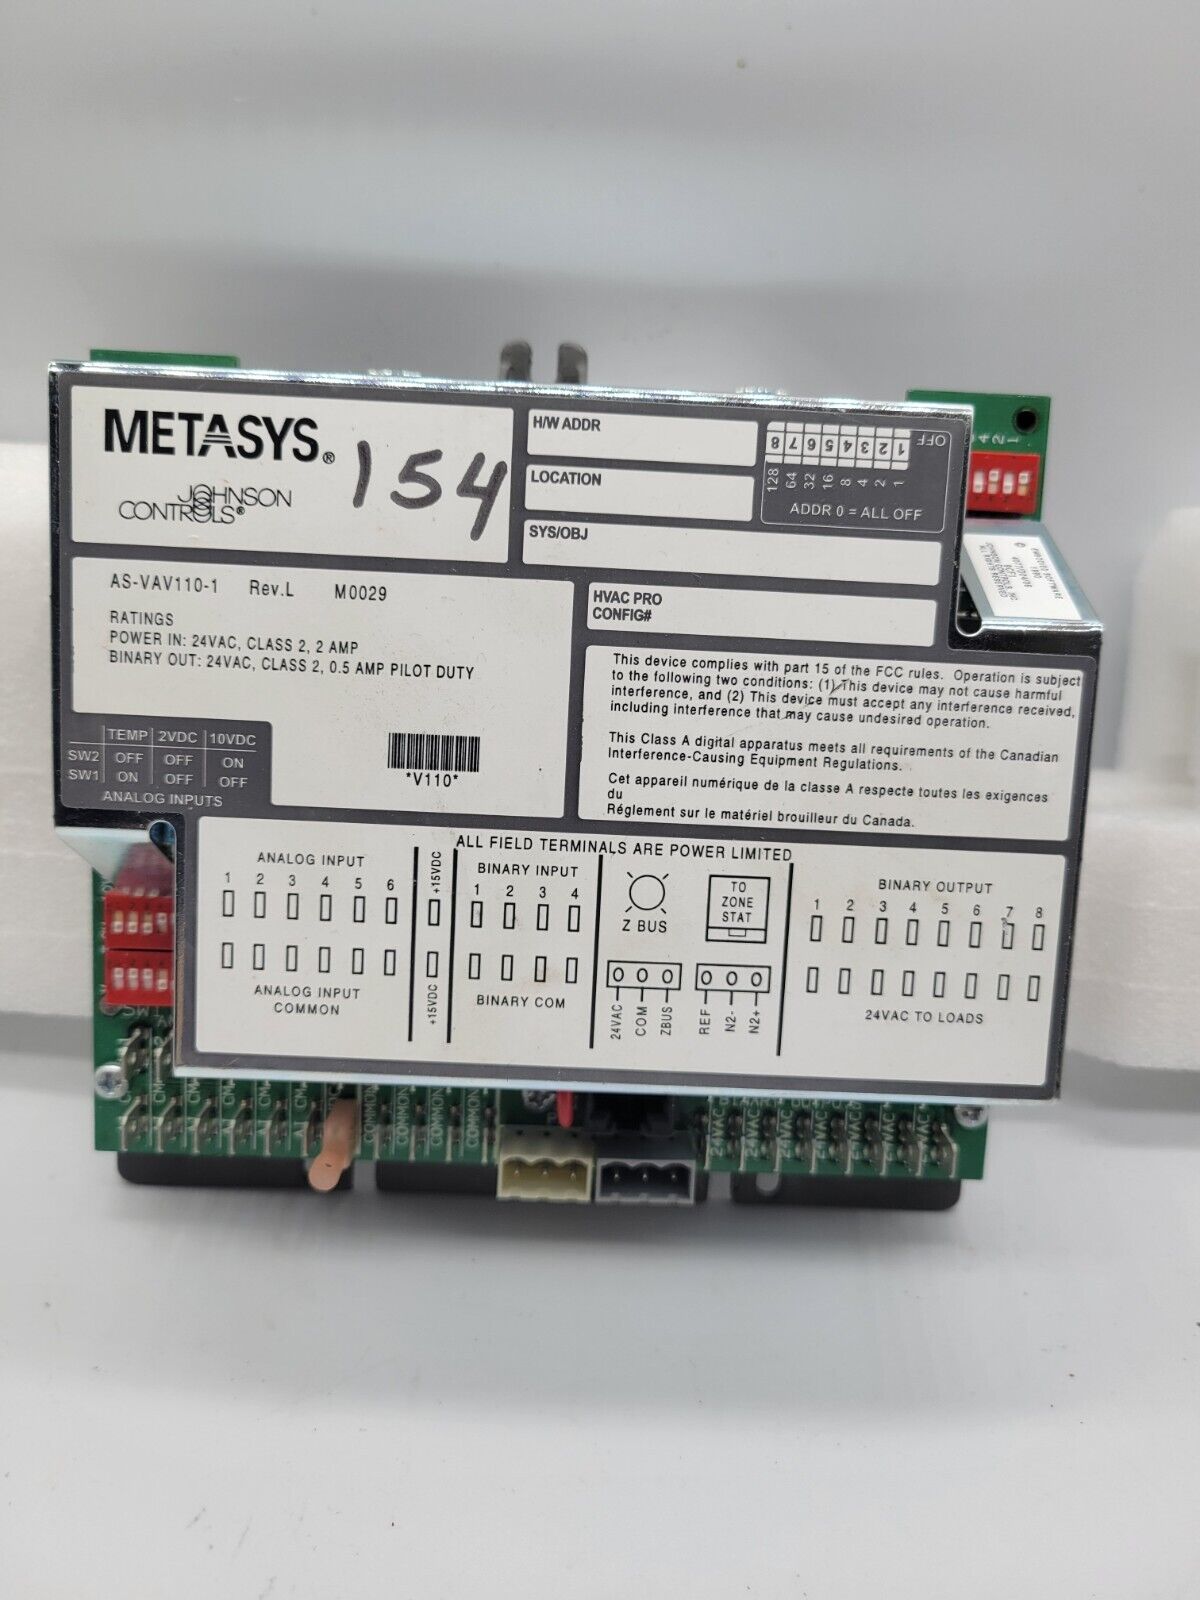 METASYS Johnson Controls - AS-VAV110-1 REV.L